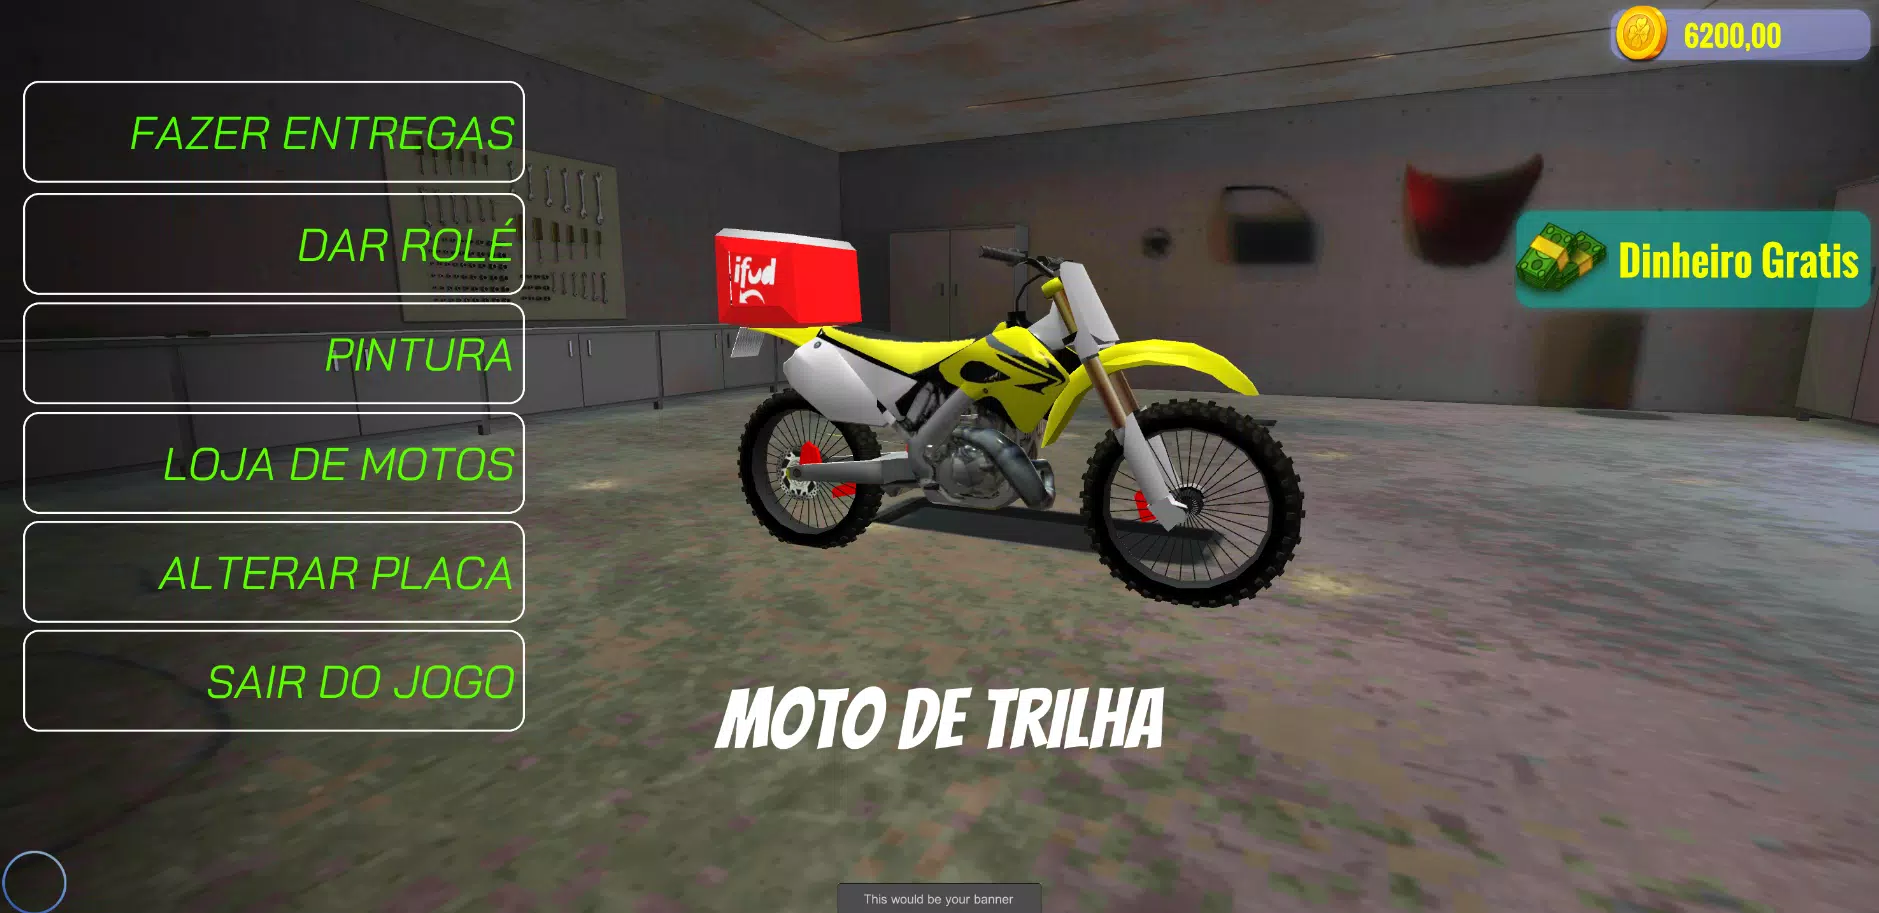 Esse é o melhor jogo dê cria de celular, com várias favelas, motos